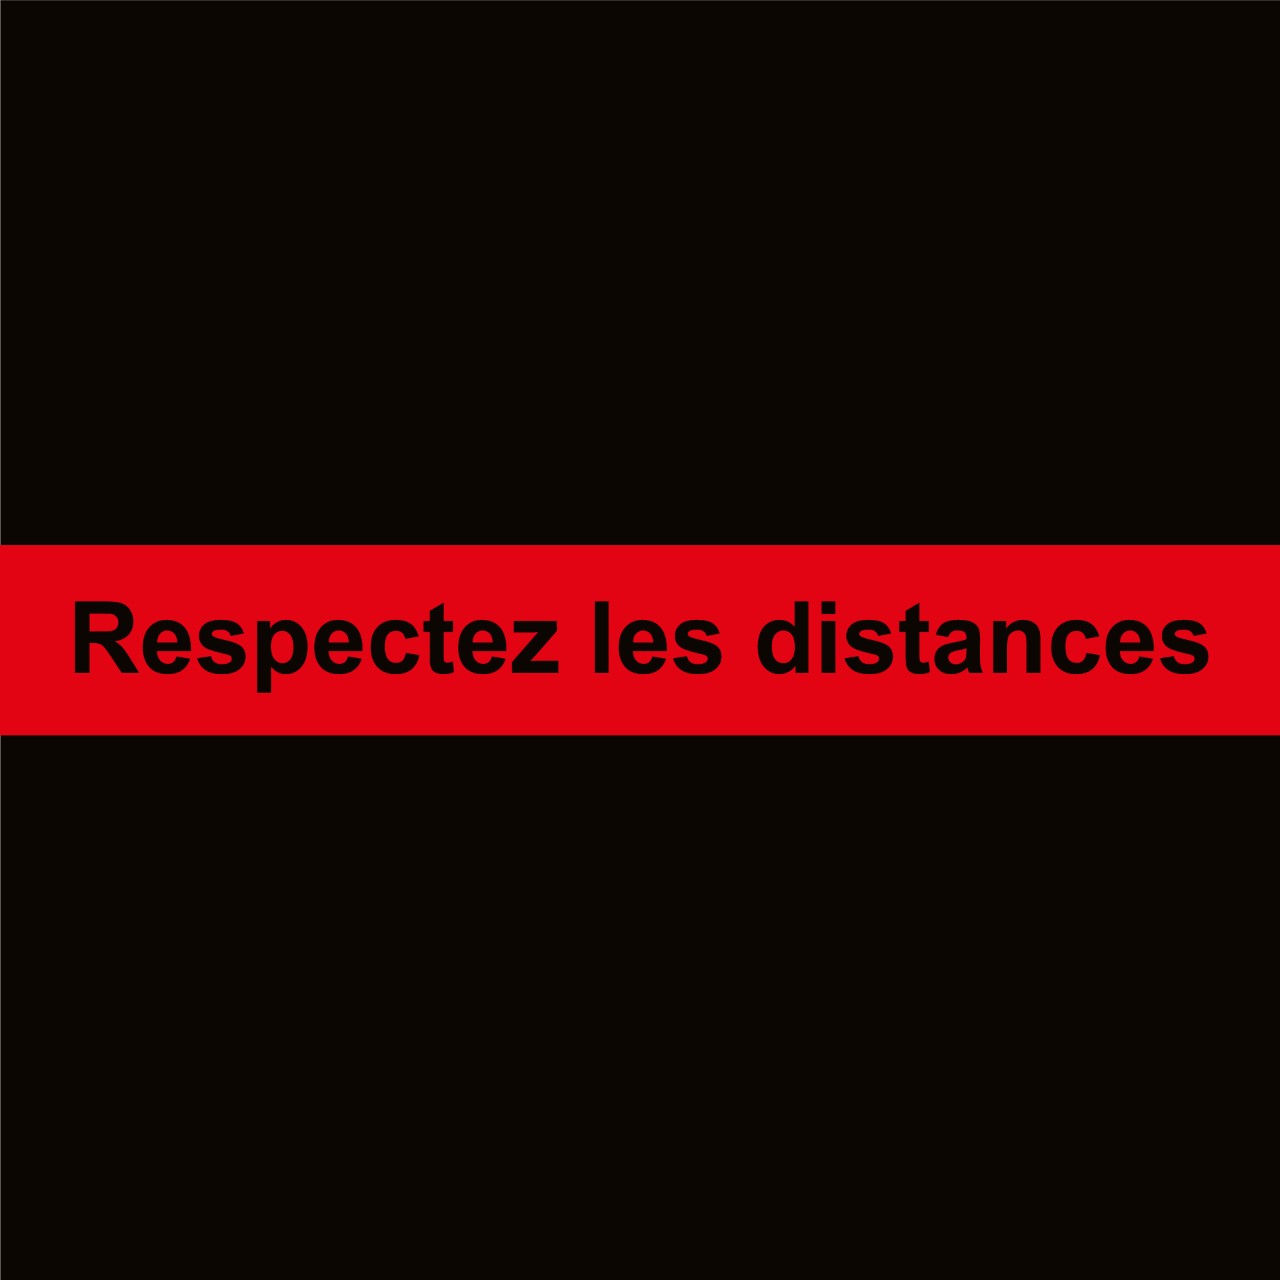 respectez-les-distance-700x100-mm_Rouge-fond-noir